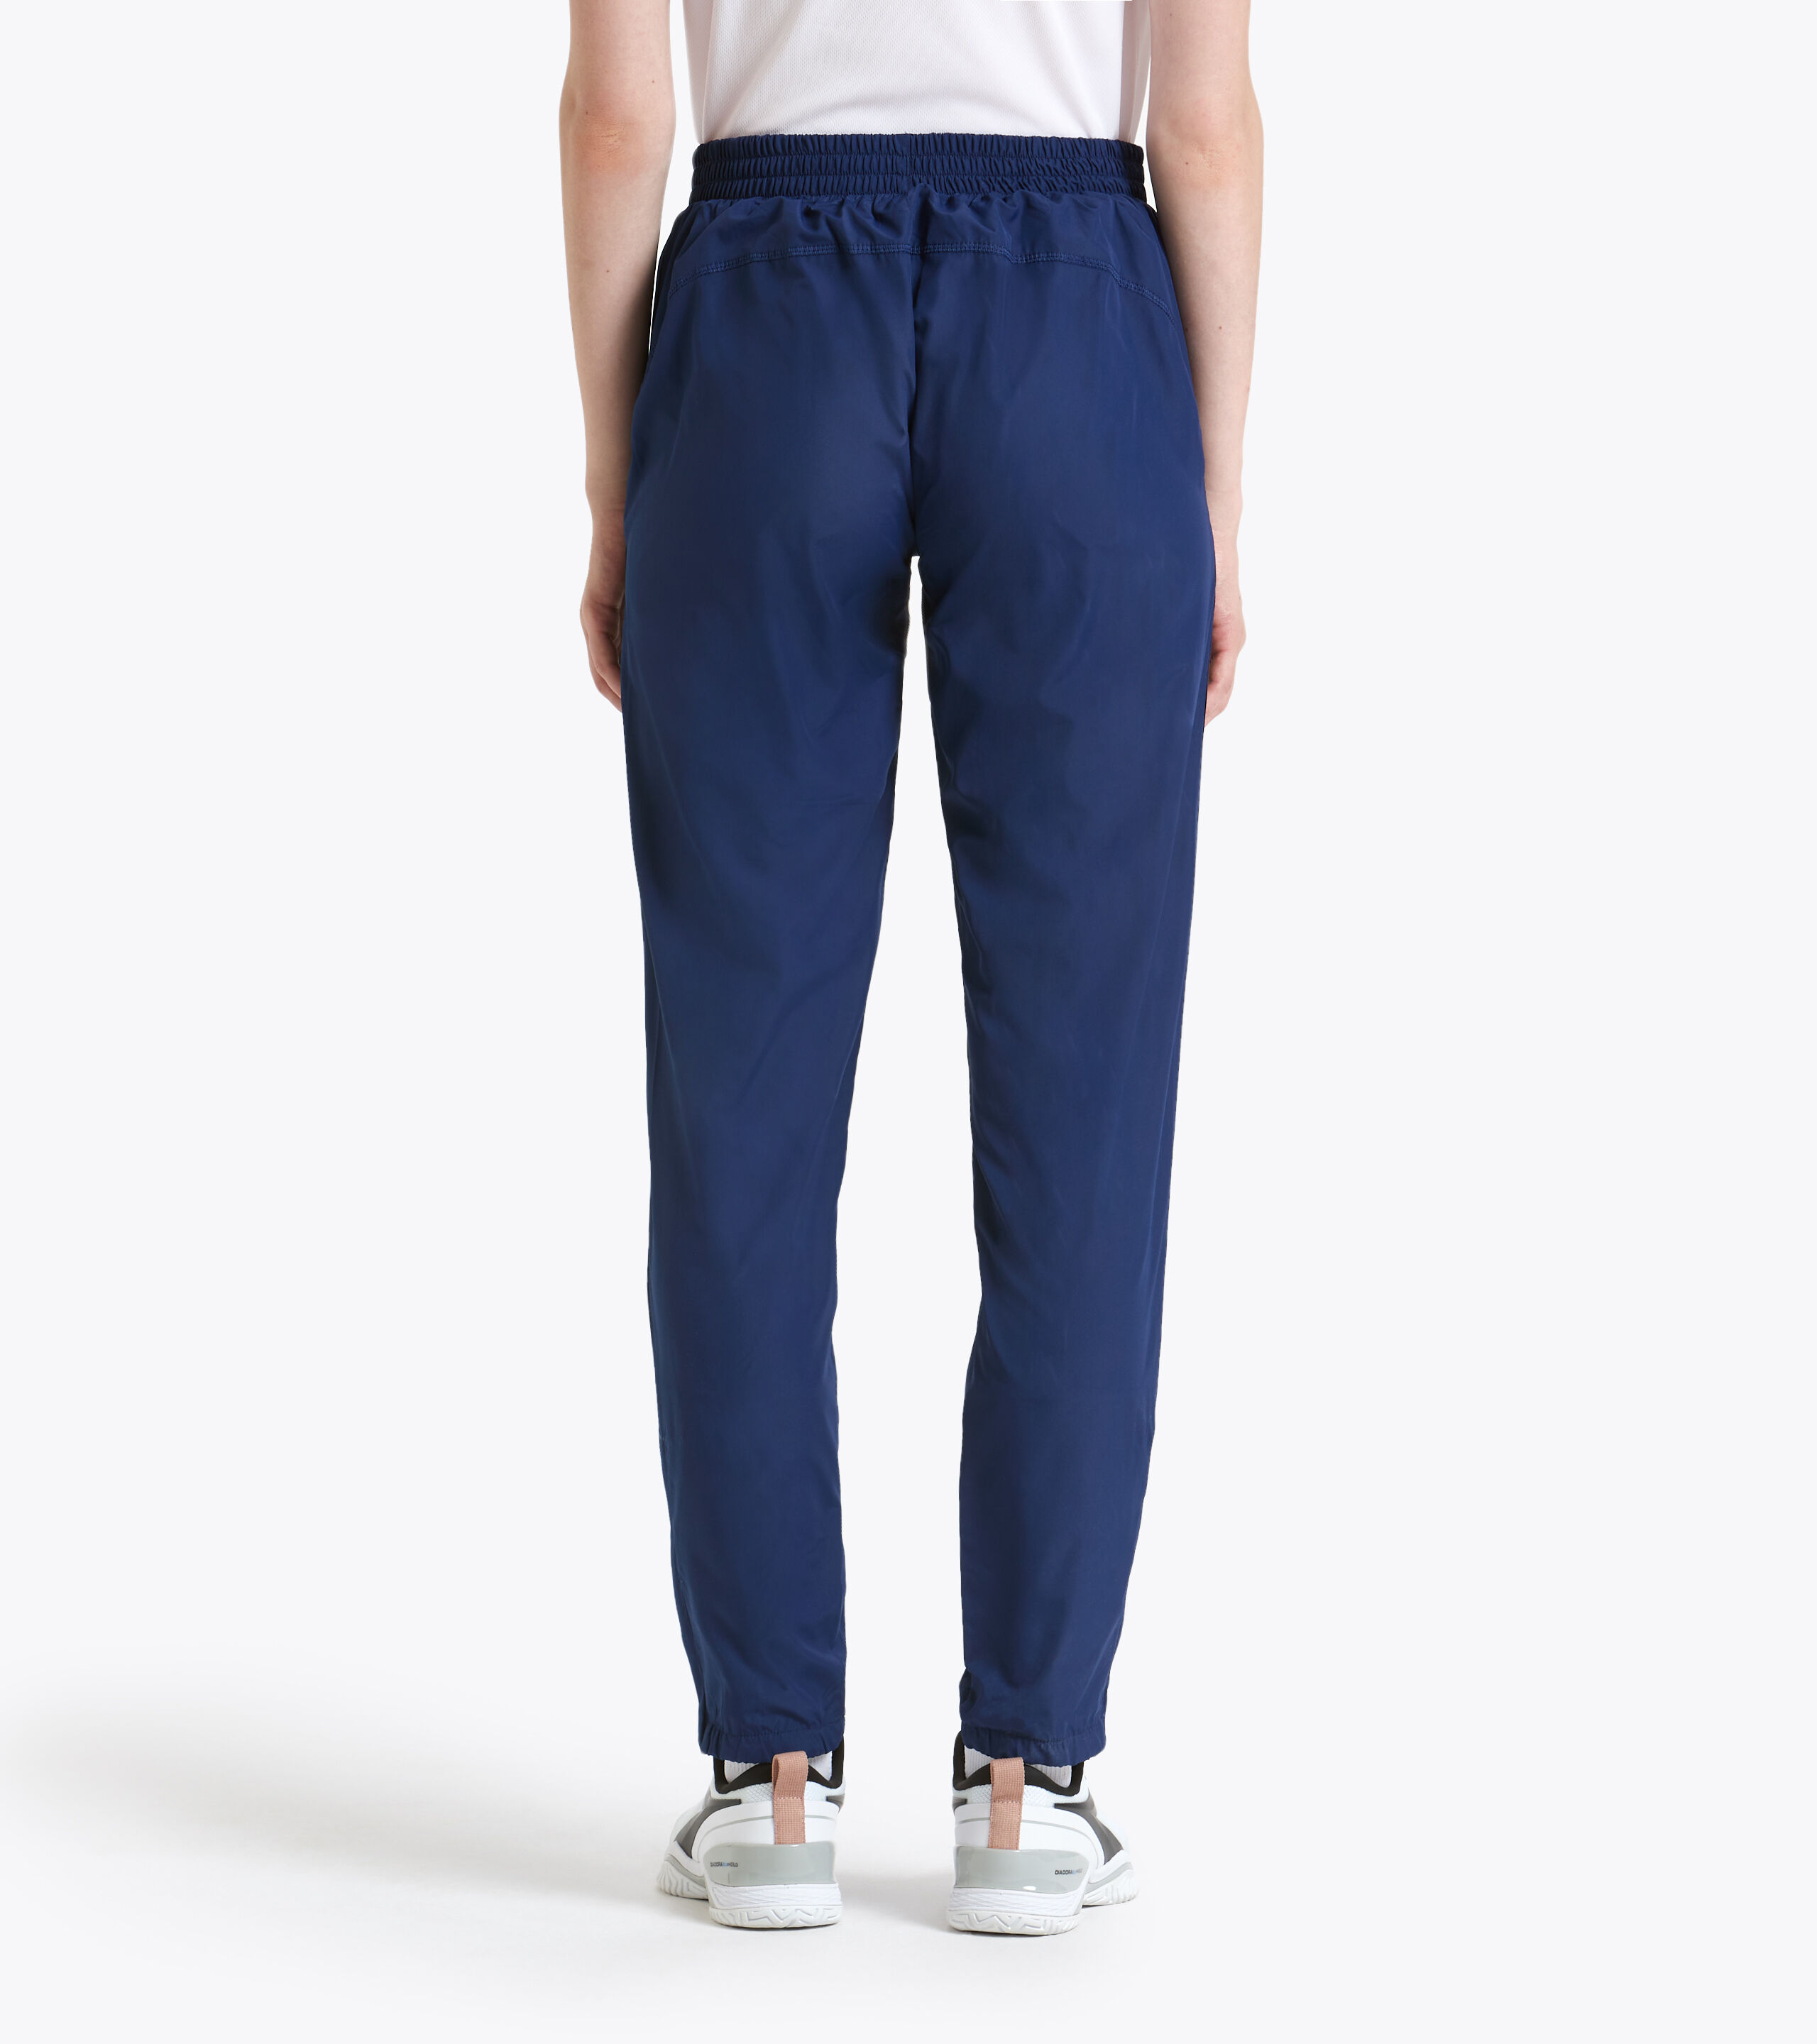 Boys Grey Trousers (Arthurs Court) – O'Farrell School & Sportswear